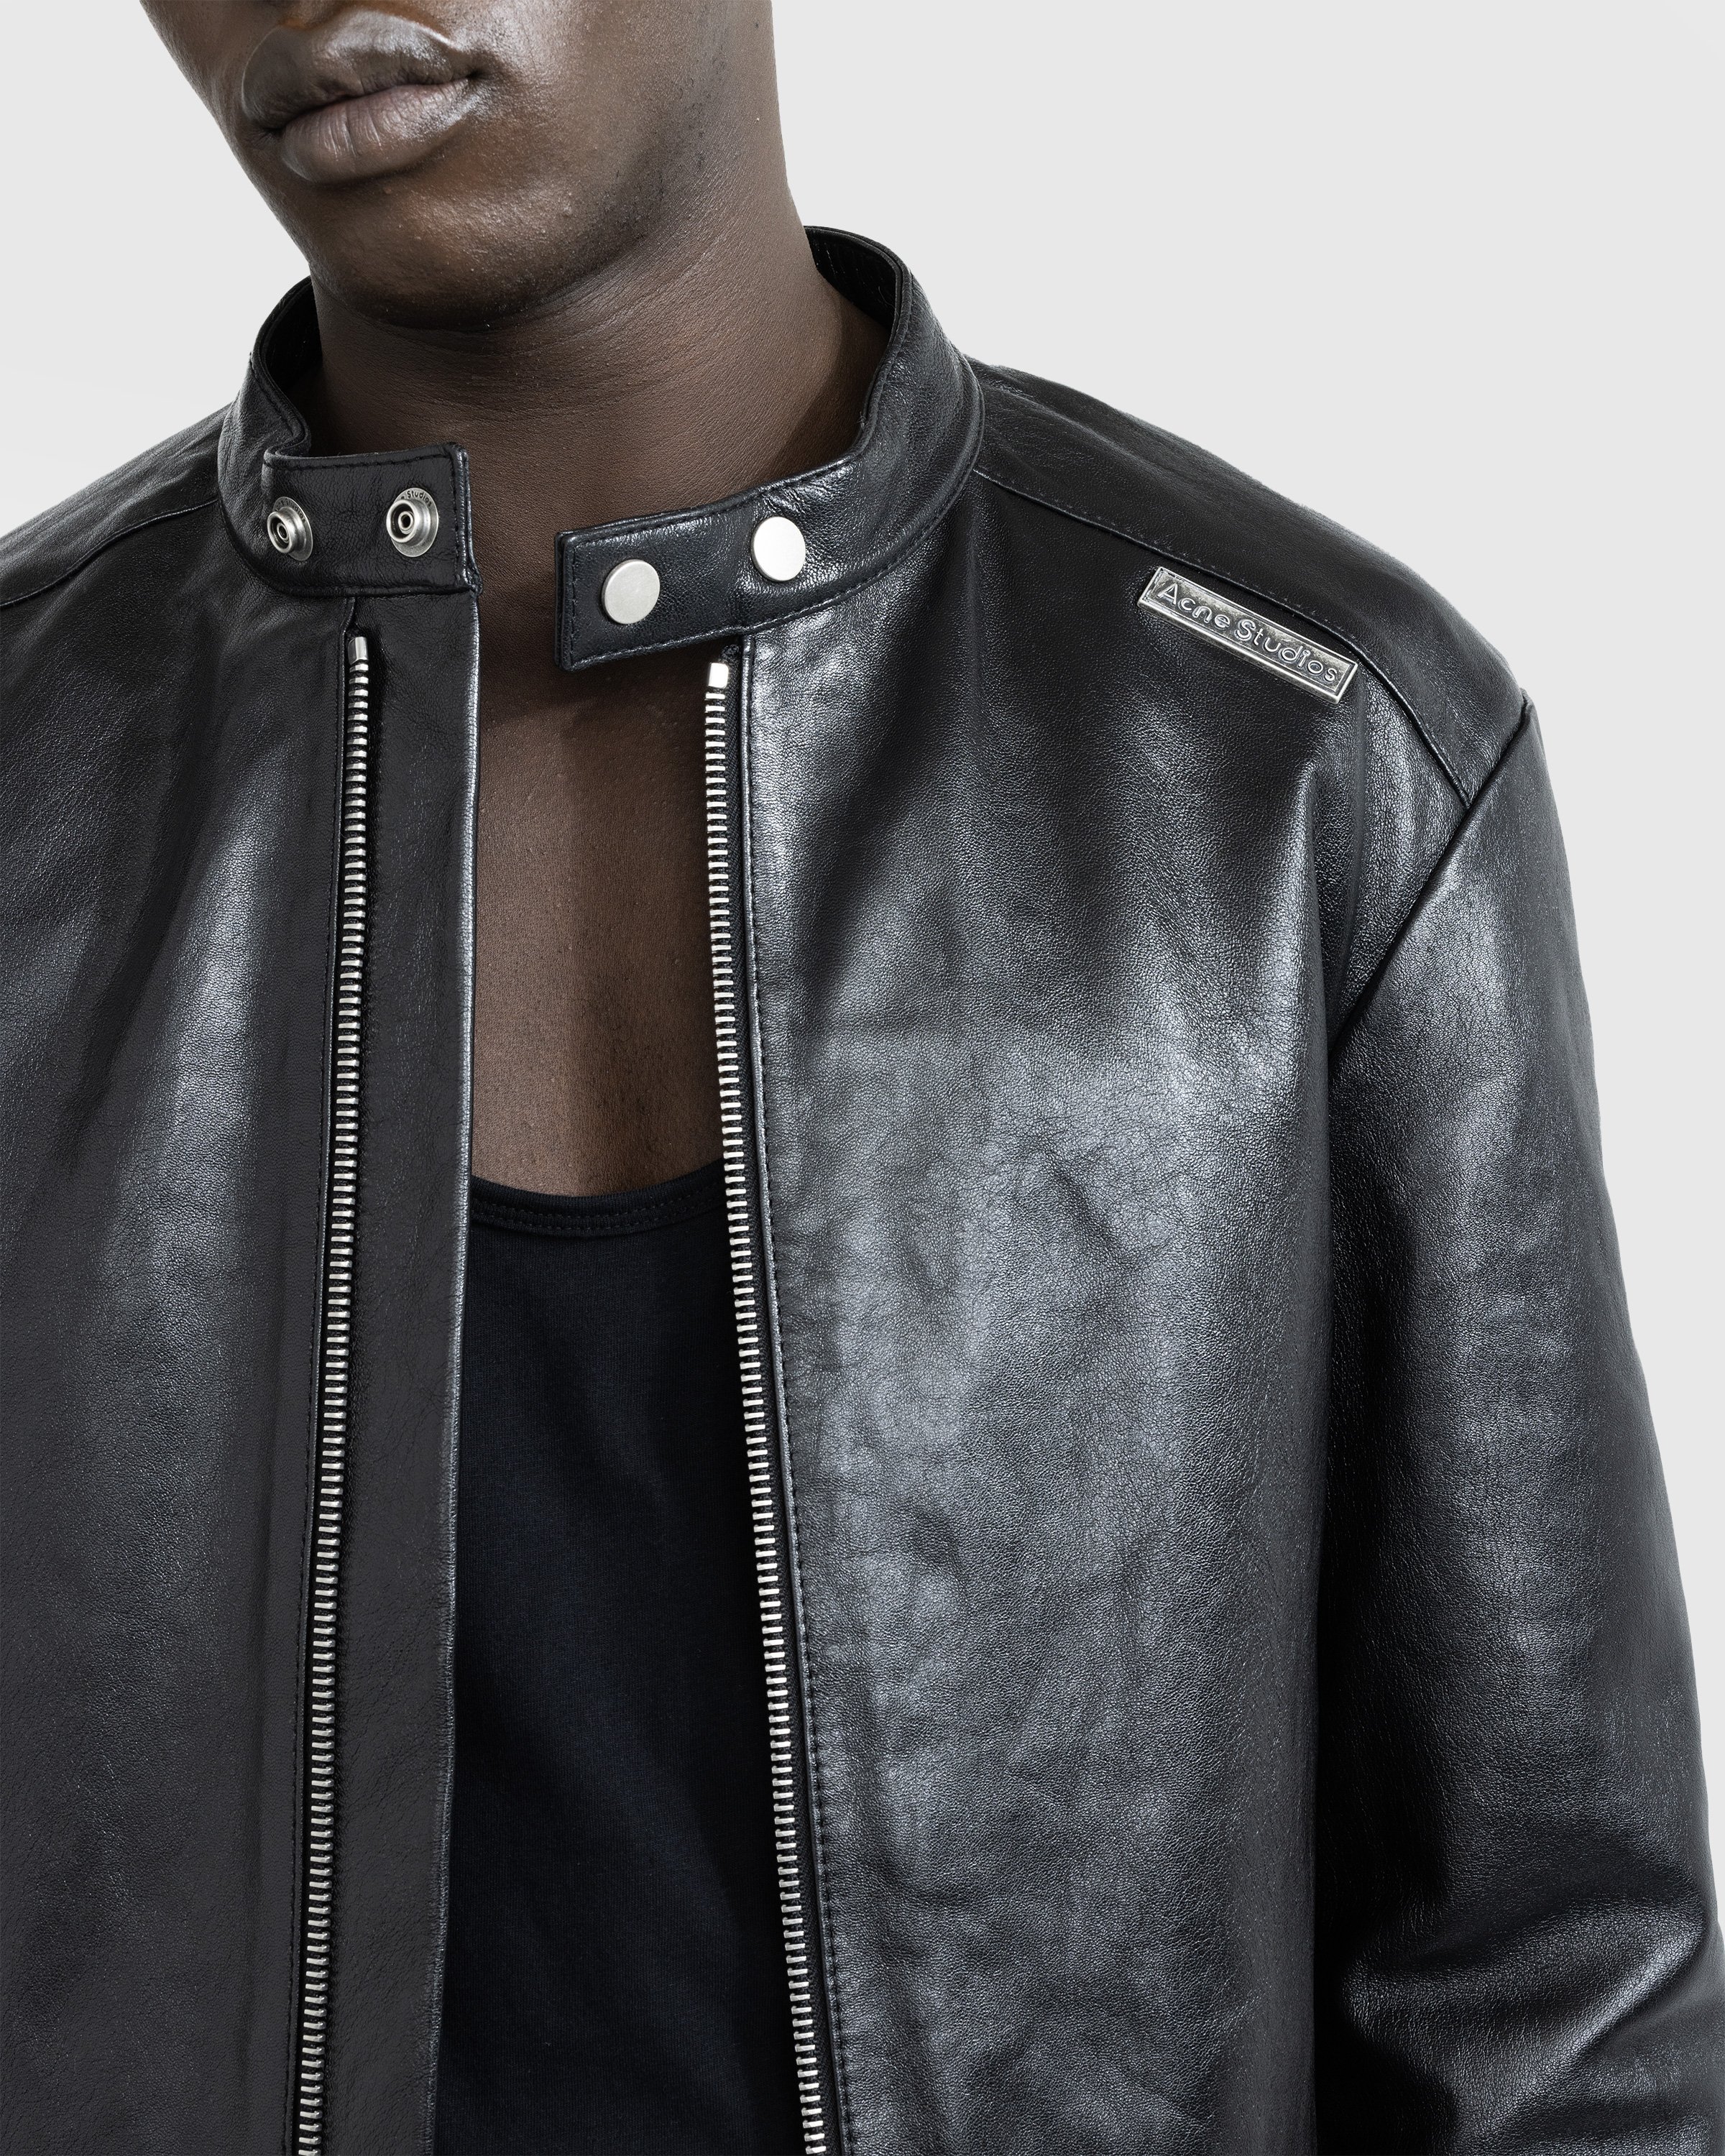 Acne Studios - Leather Jacket Black - Clothing - Black - Image 5